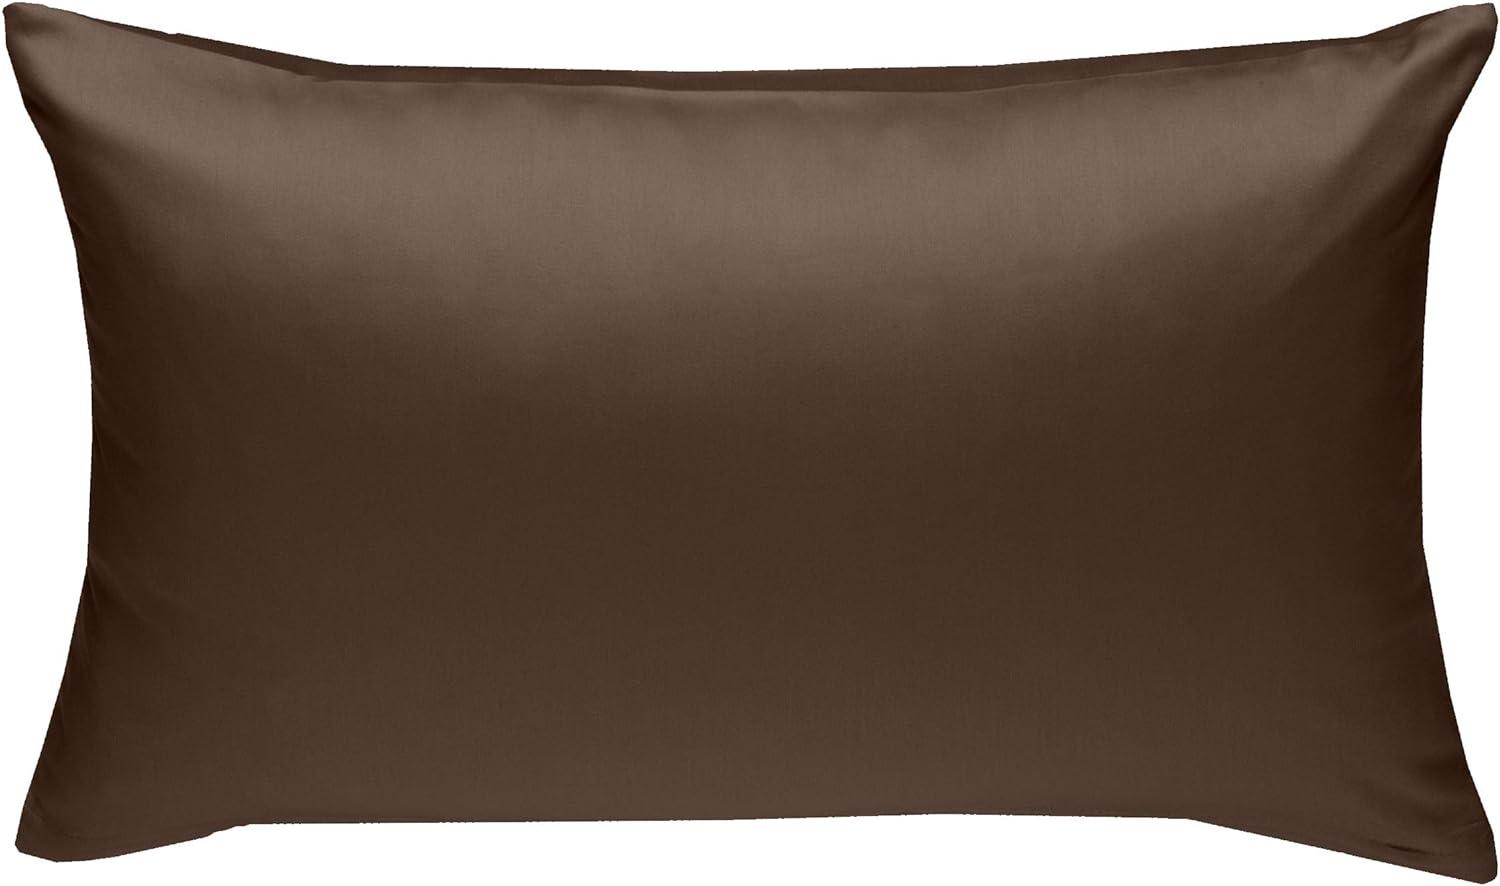 Bettwaesche-mit-Stil Mako-Satin / Baumwollsatin Bettwäsche uni / einfarbig dunkelbraun Kissenbezug 60x80 cm Bild 1